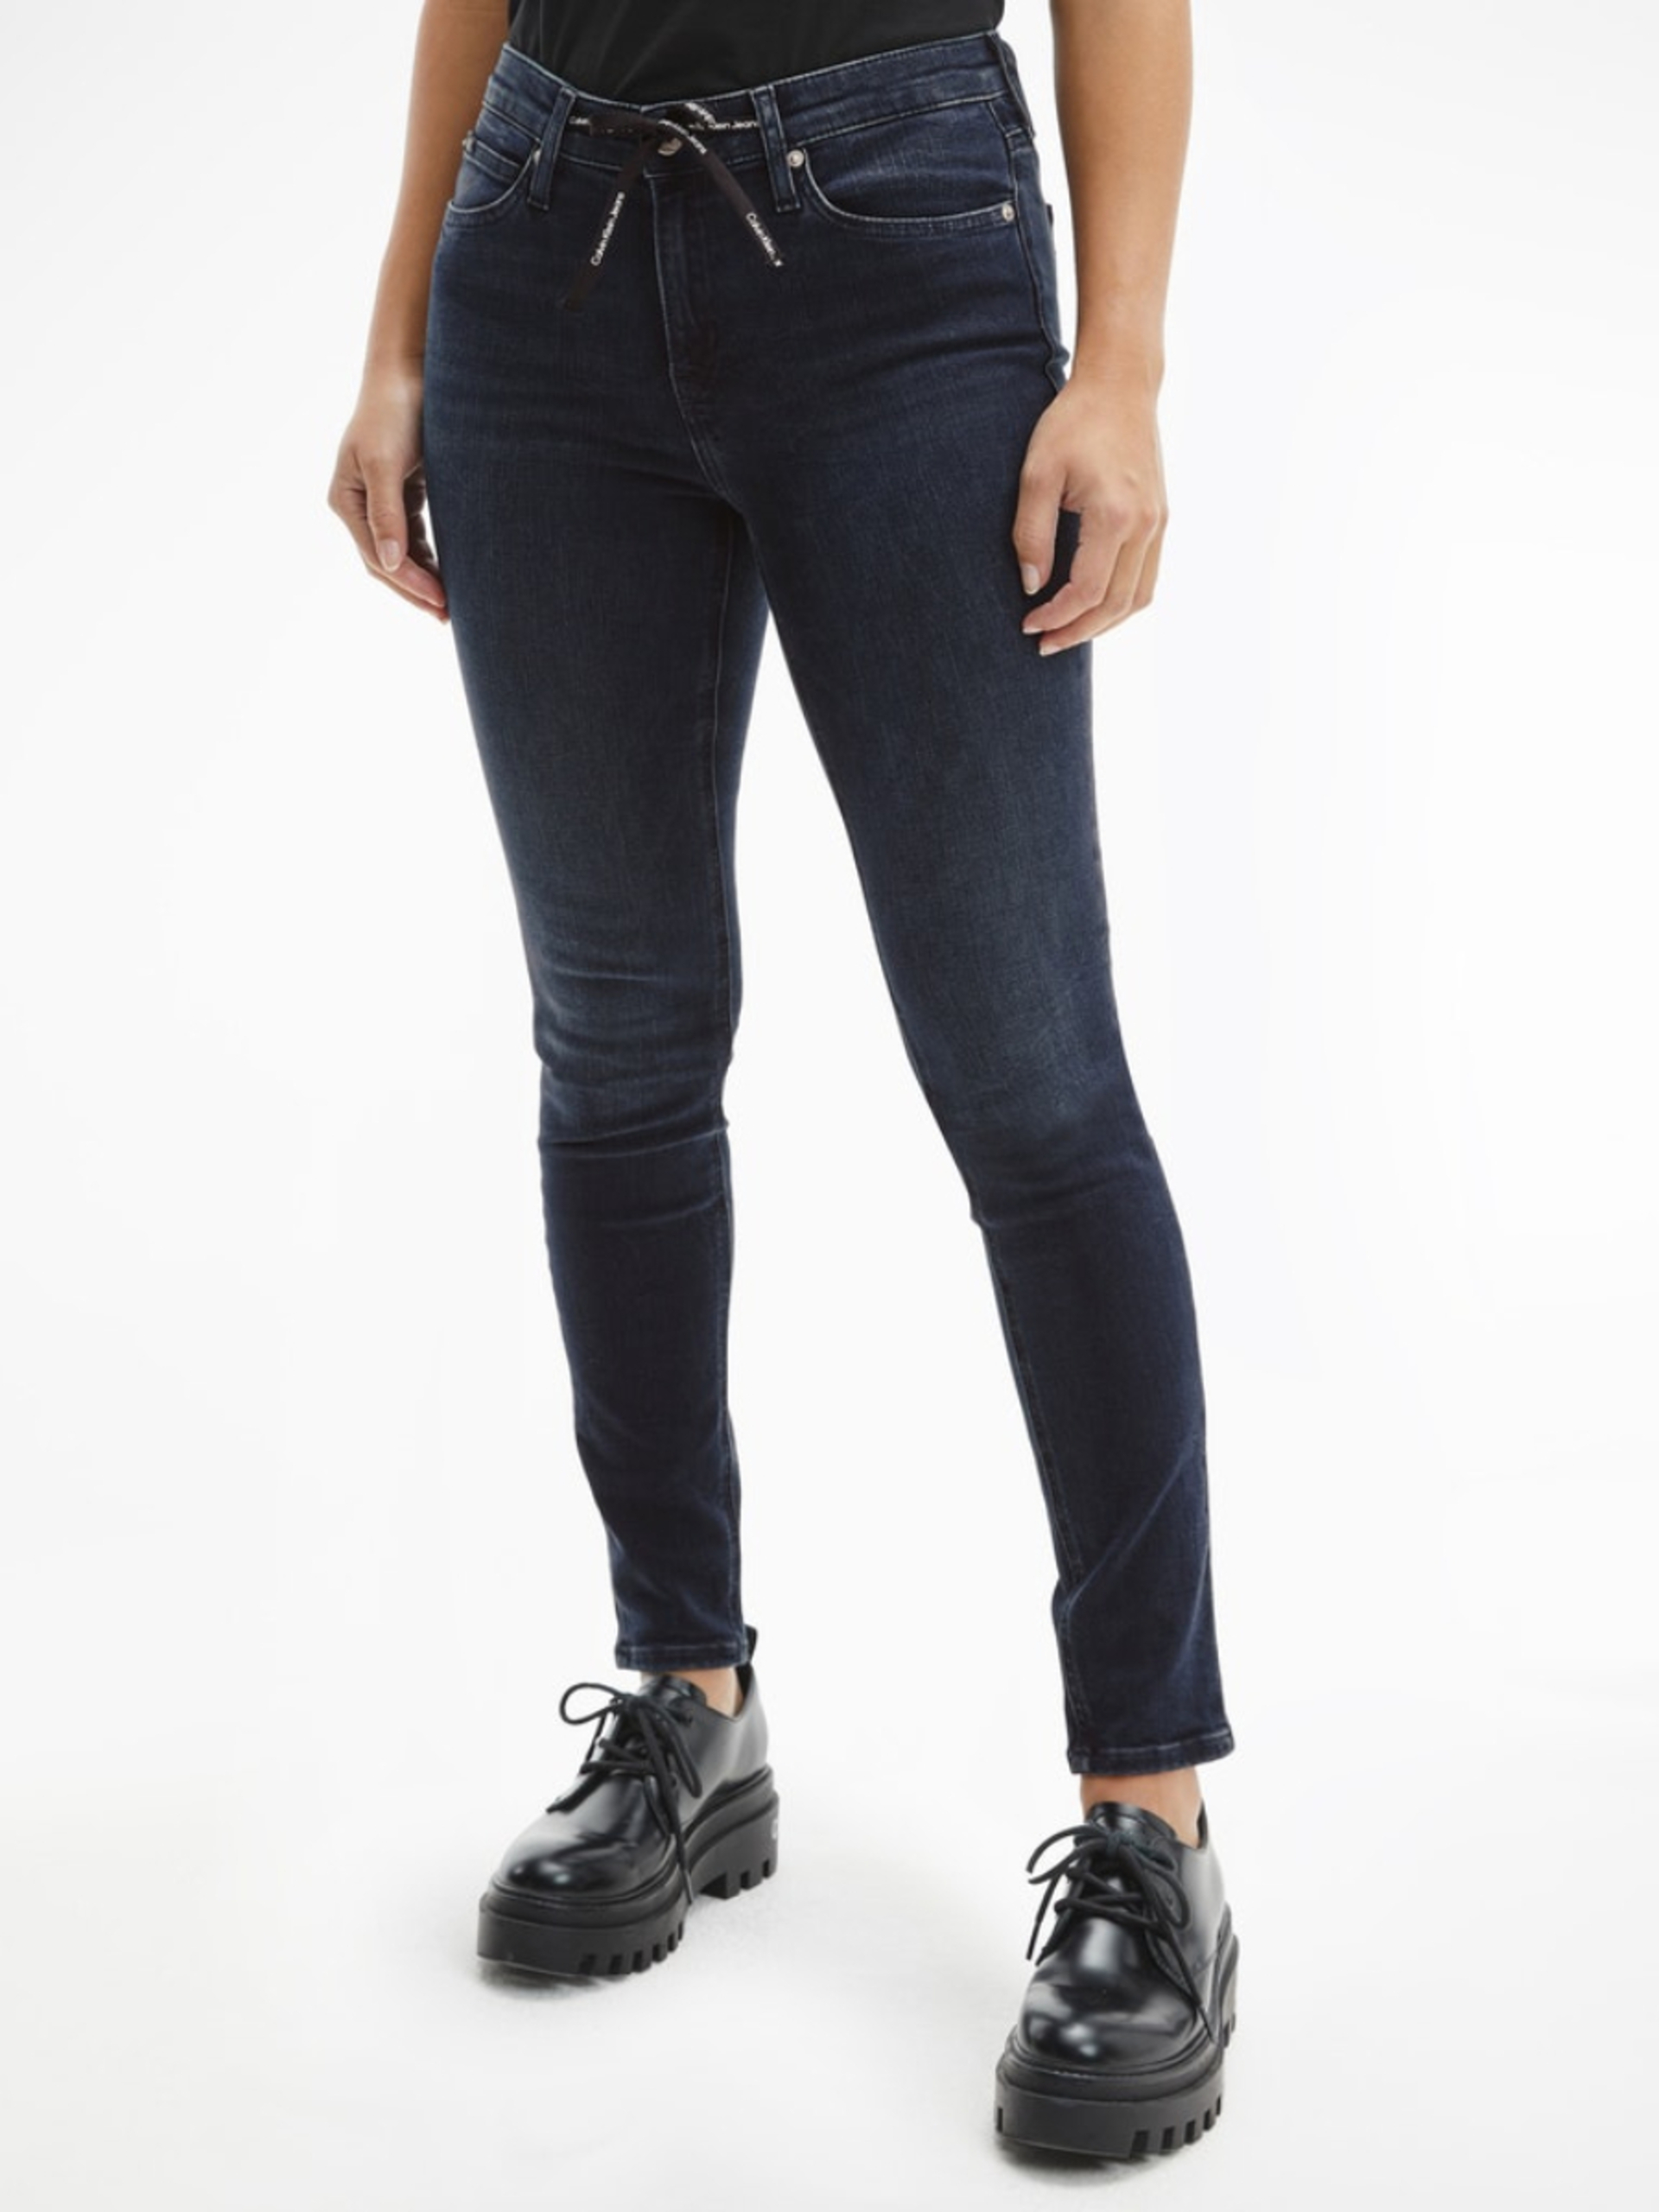 Calvin Klein dámské tmavě modré džíny - 26/30 (1BY)